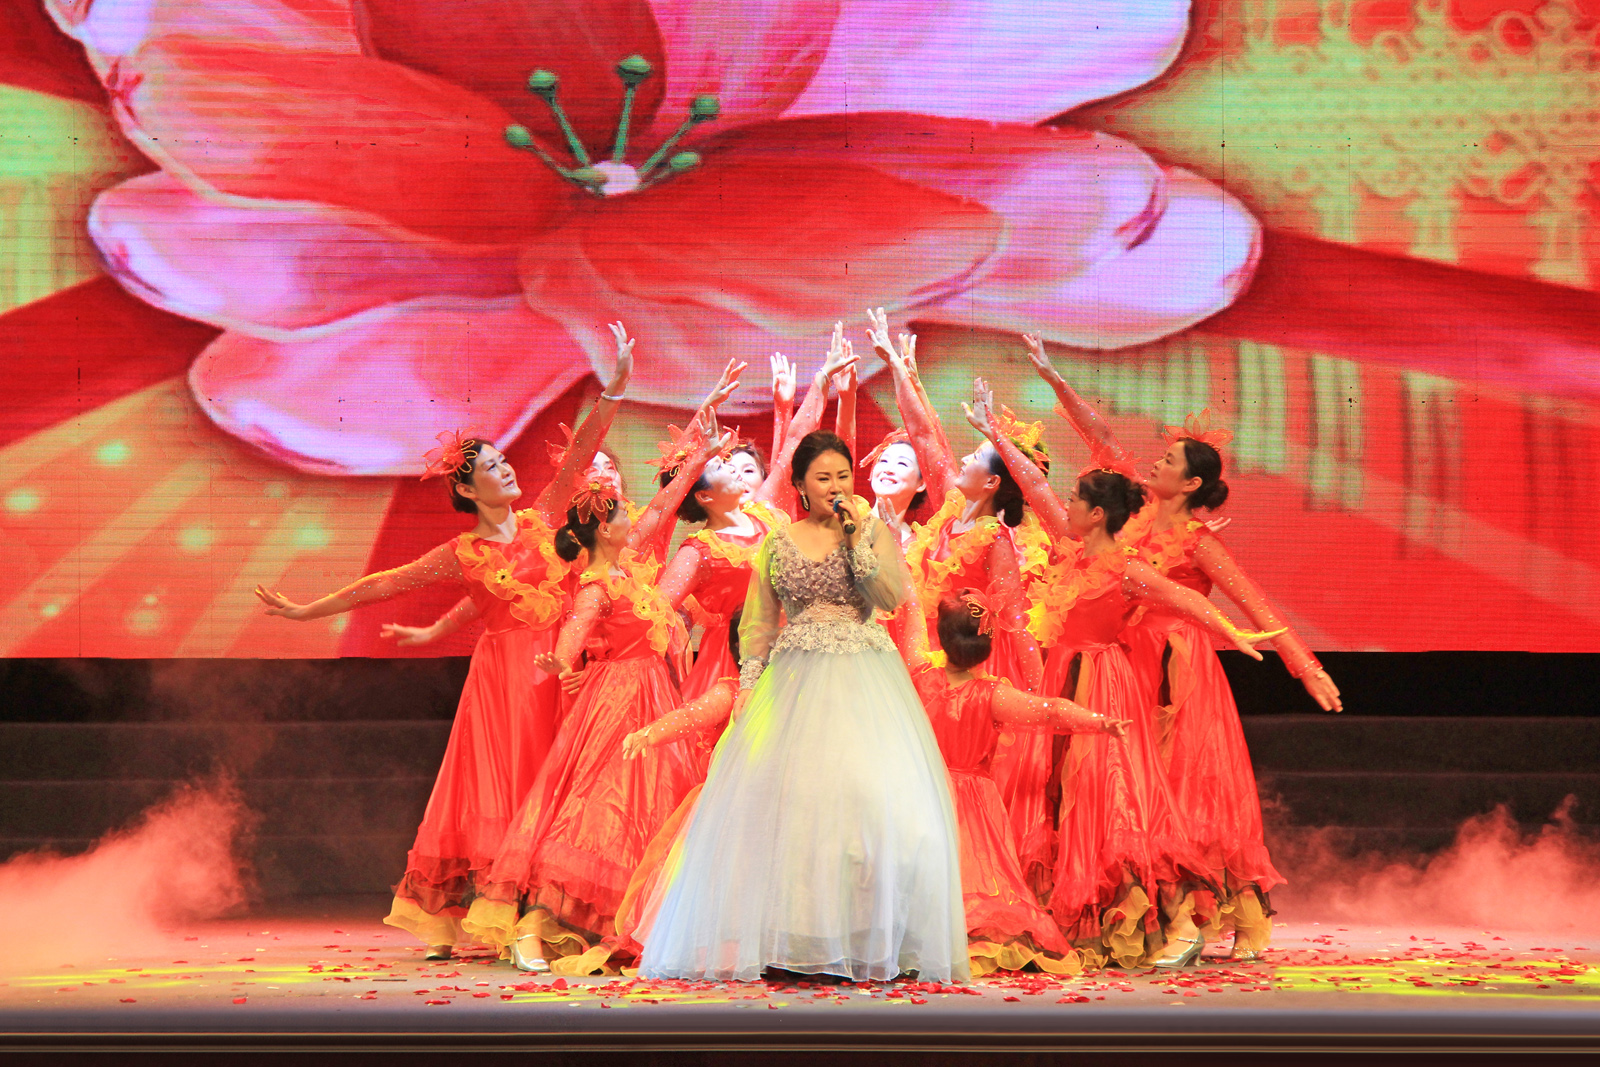 安徽佛教梵呗艺术团文艺演出节目:歌伴舞《中国梦》